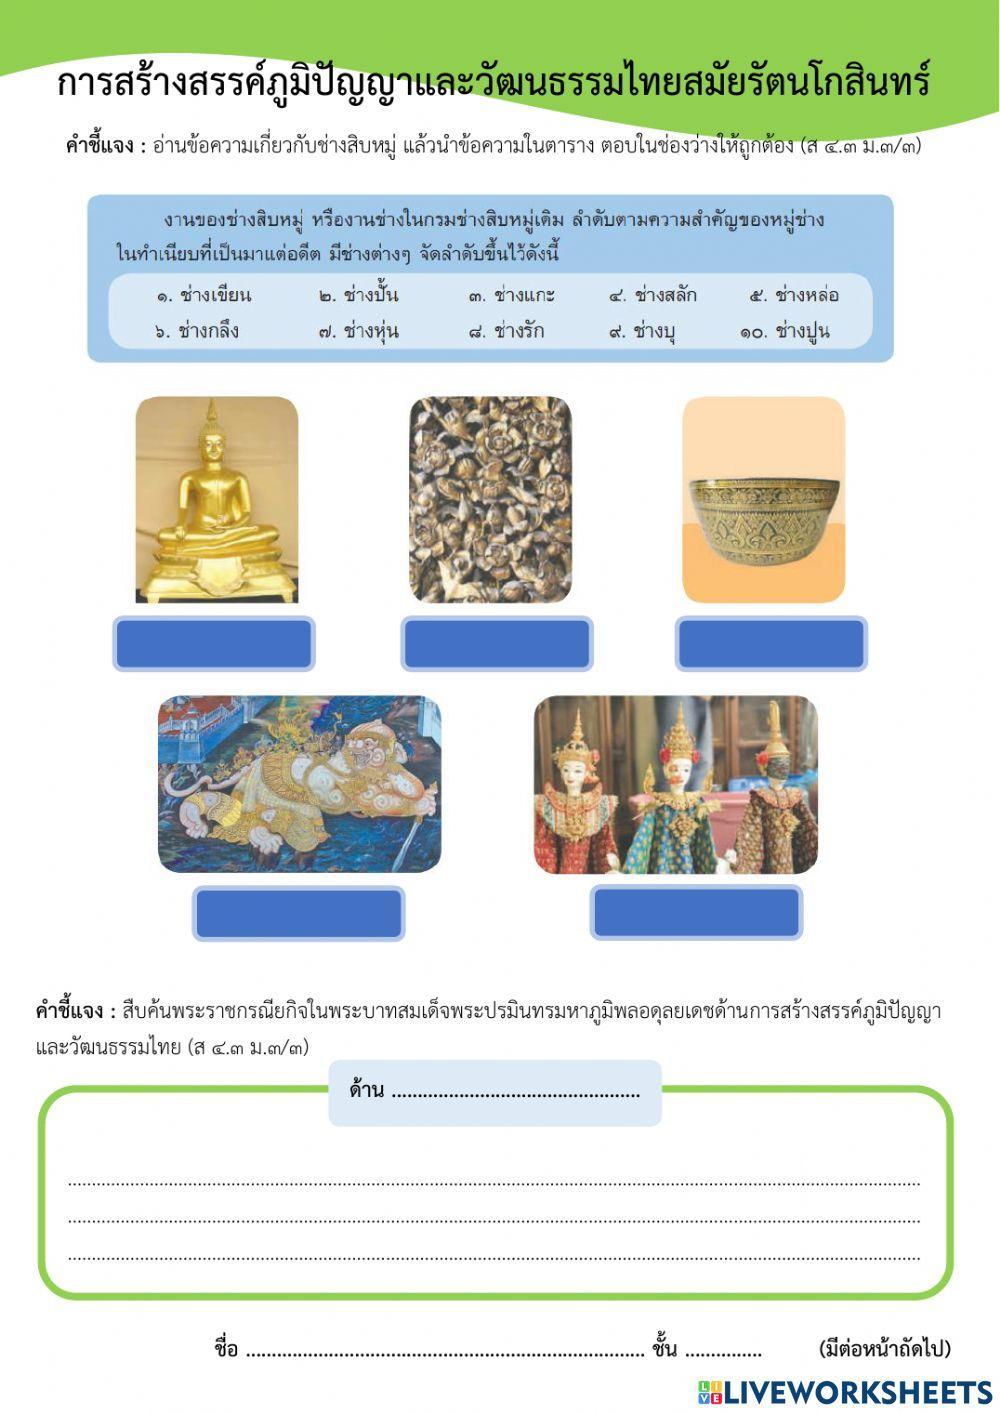 ม.3 ภูมิปัญญาและวัฒนธรรมไทยสมัยรัตนโกสินทร์